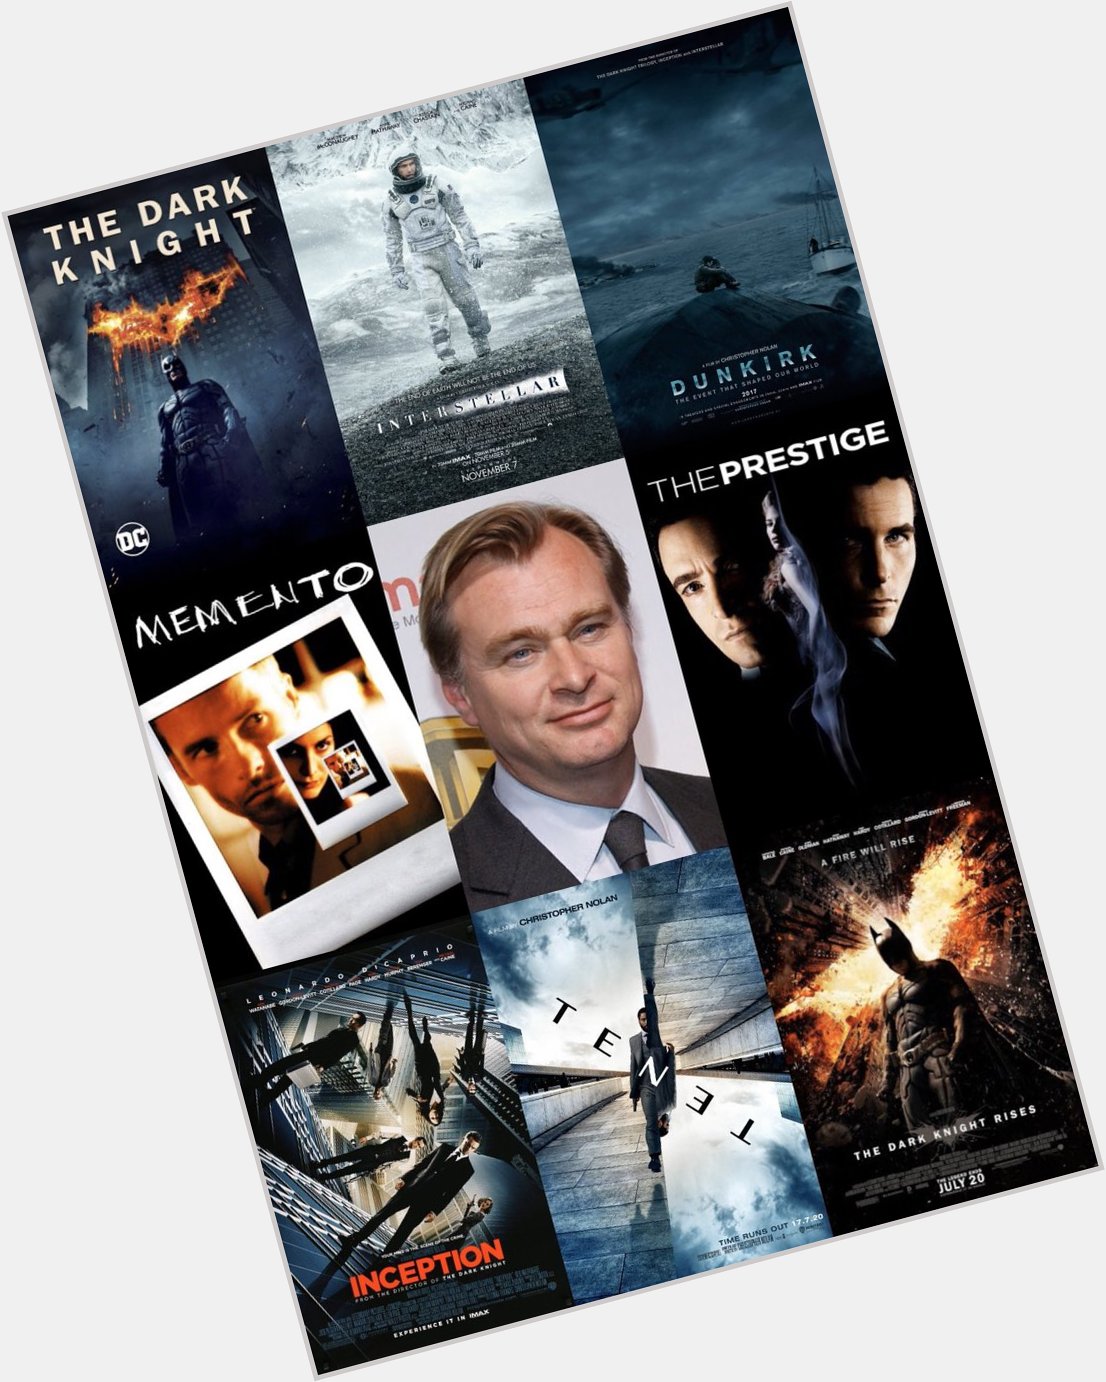 Happy birthday to cinematic genius 
Christopher Nolan! 